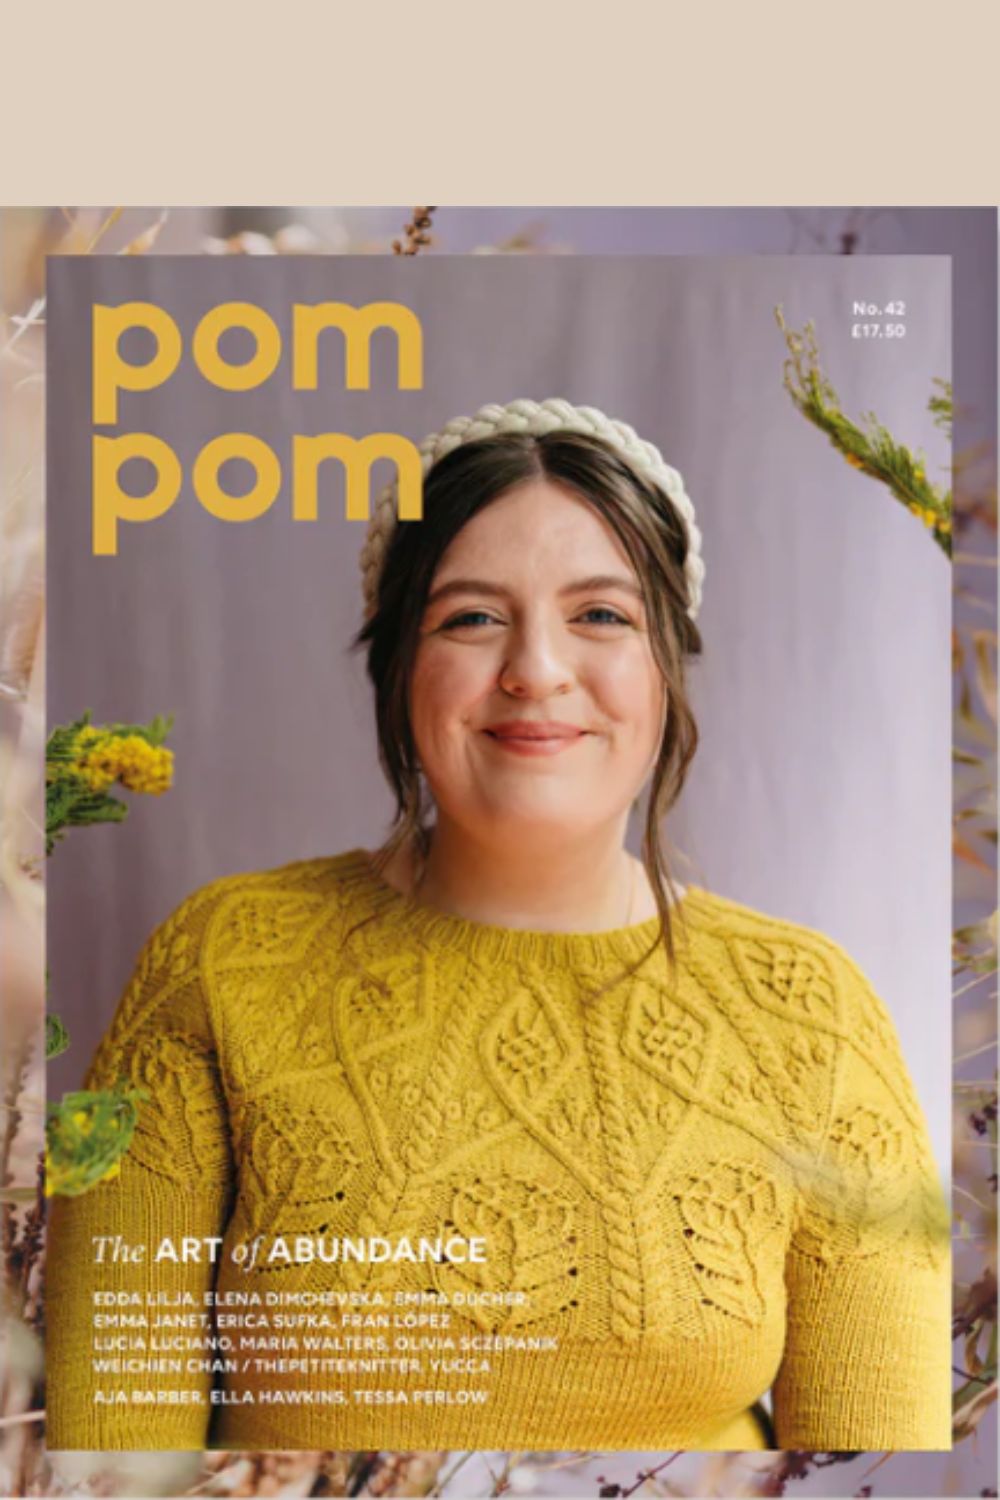 Pompom Quarterly Issue 42